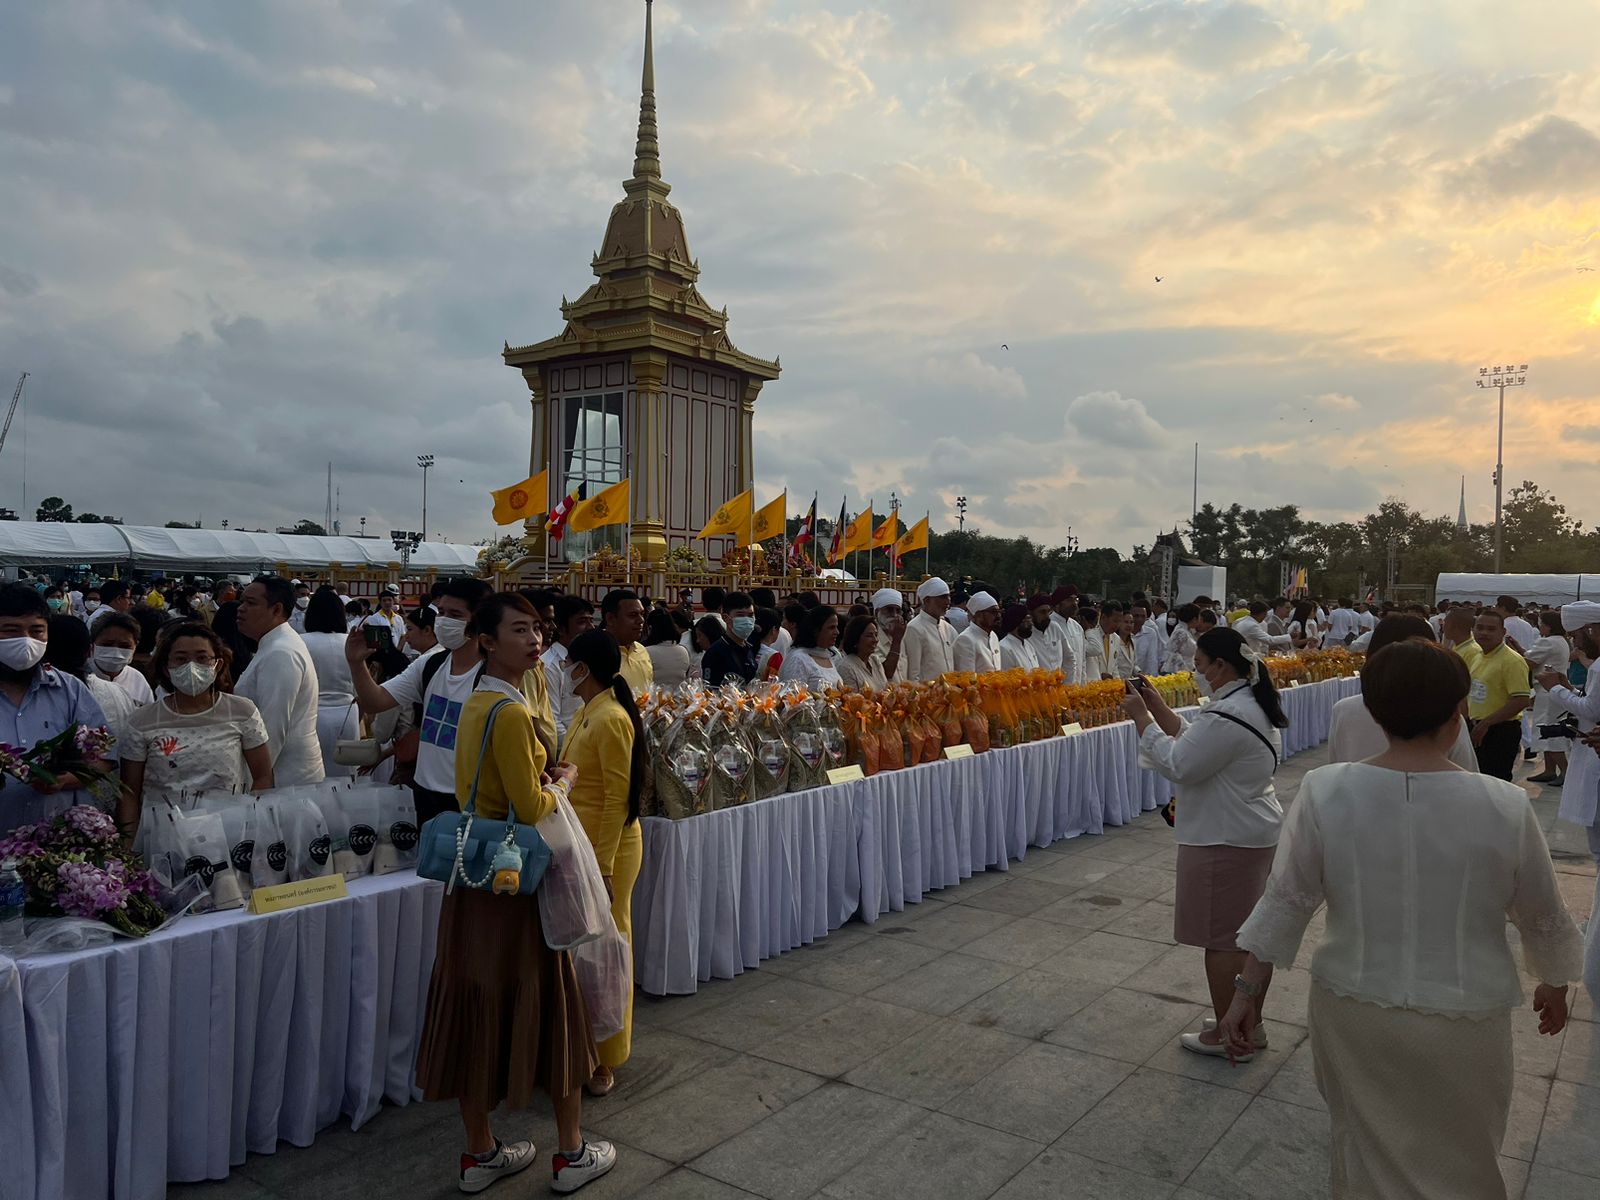 थाईलैंड में माखाबुचा समारोह :भगवान बुद्ध के पवित्र अवशेष के दर्शनों के लिए आए बड़ी संख्या में लोग